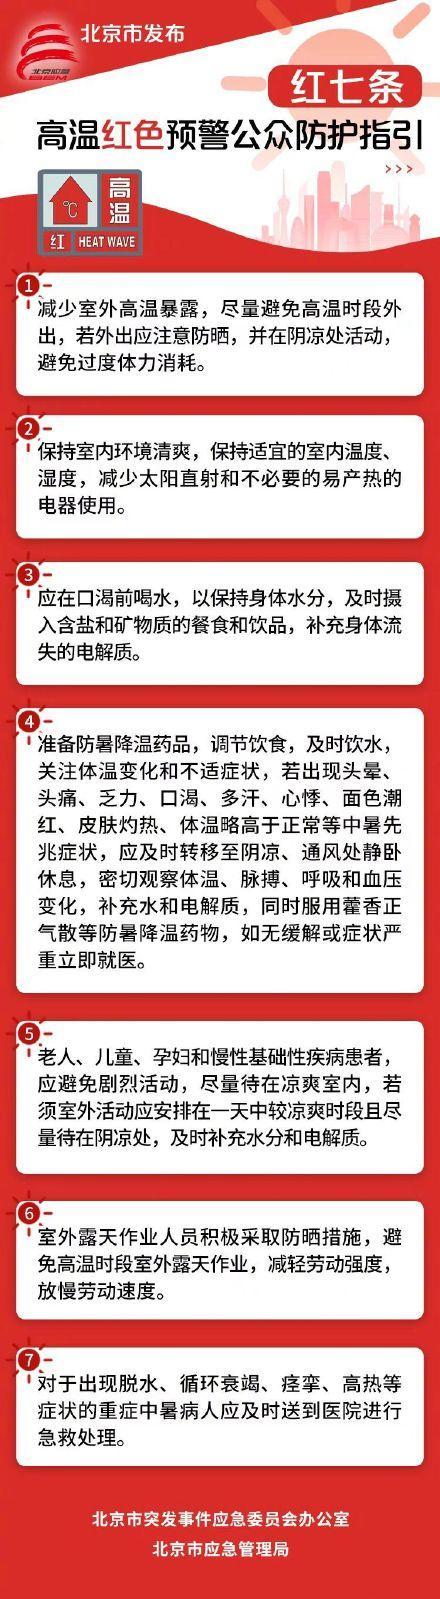 北京市发布高温预警公众防护指引